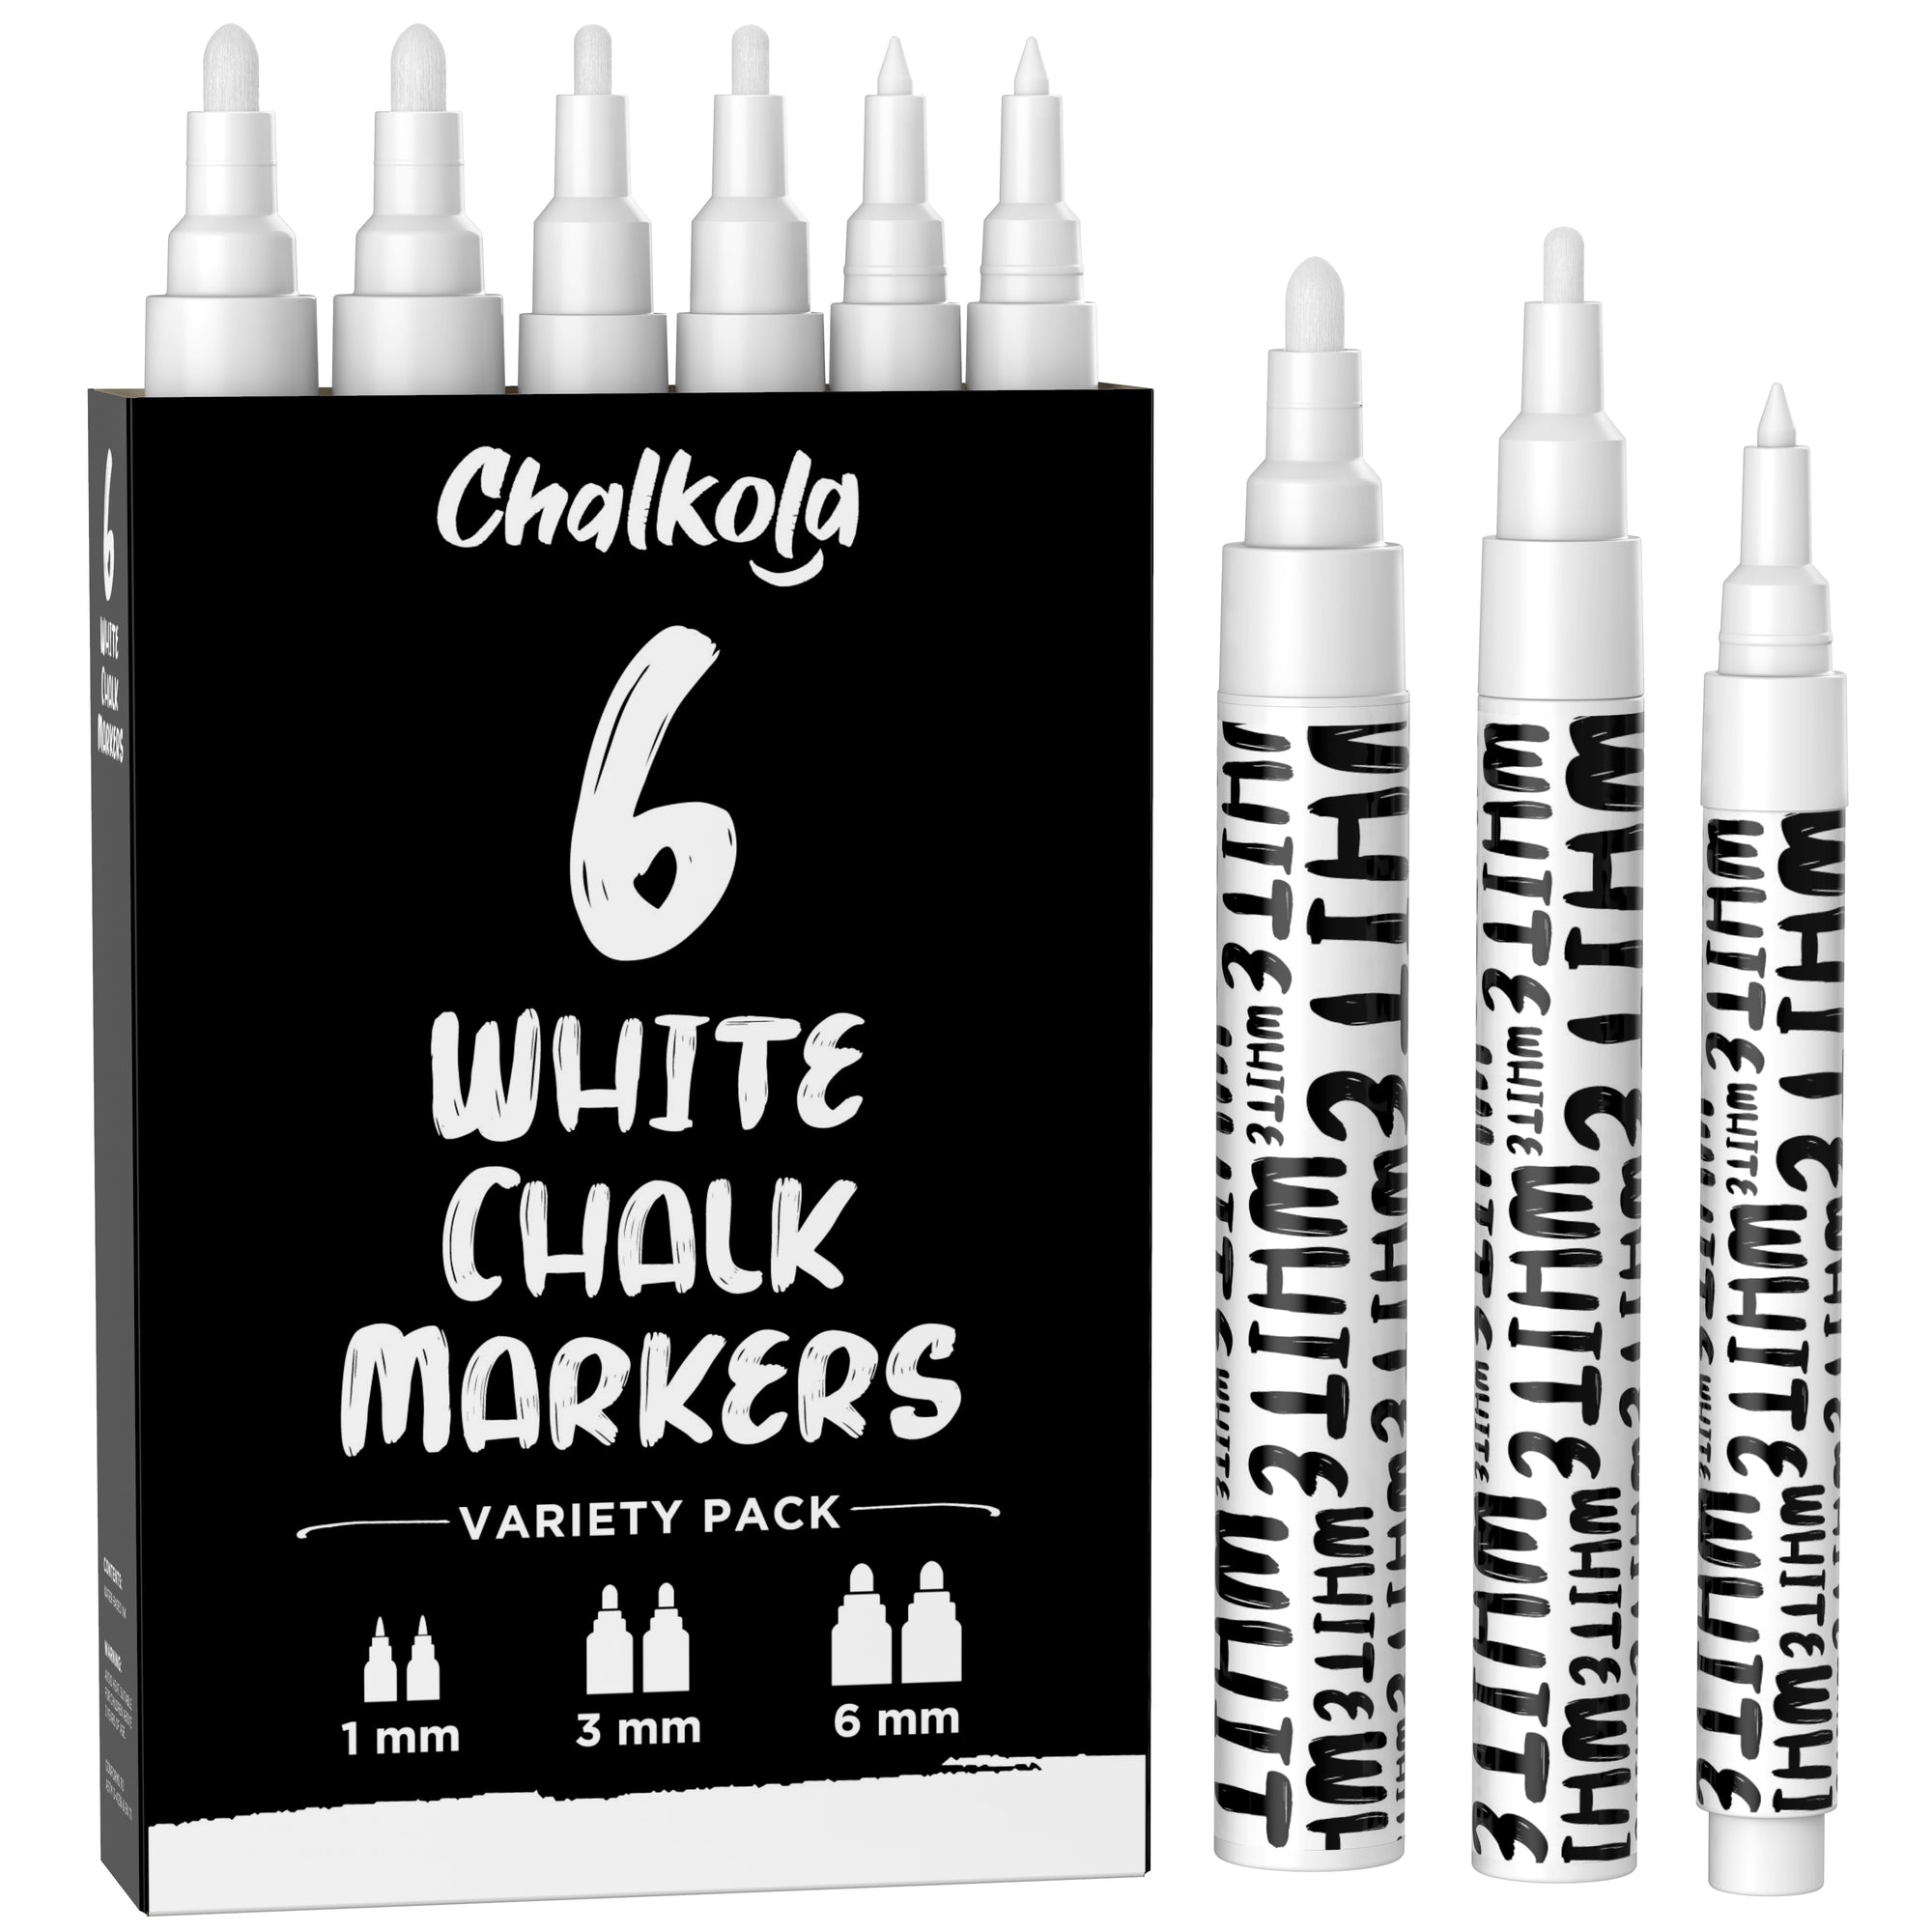 Versachalk Metallic Liquid Chalk Markers 3mm Fine Tip